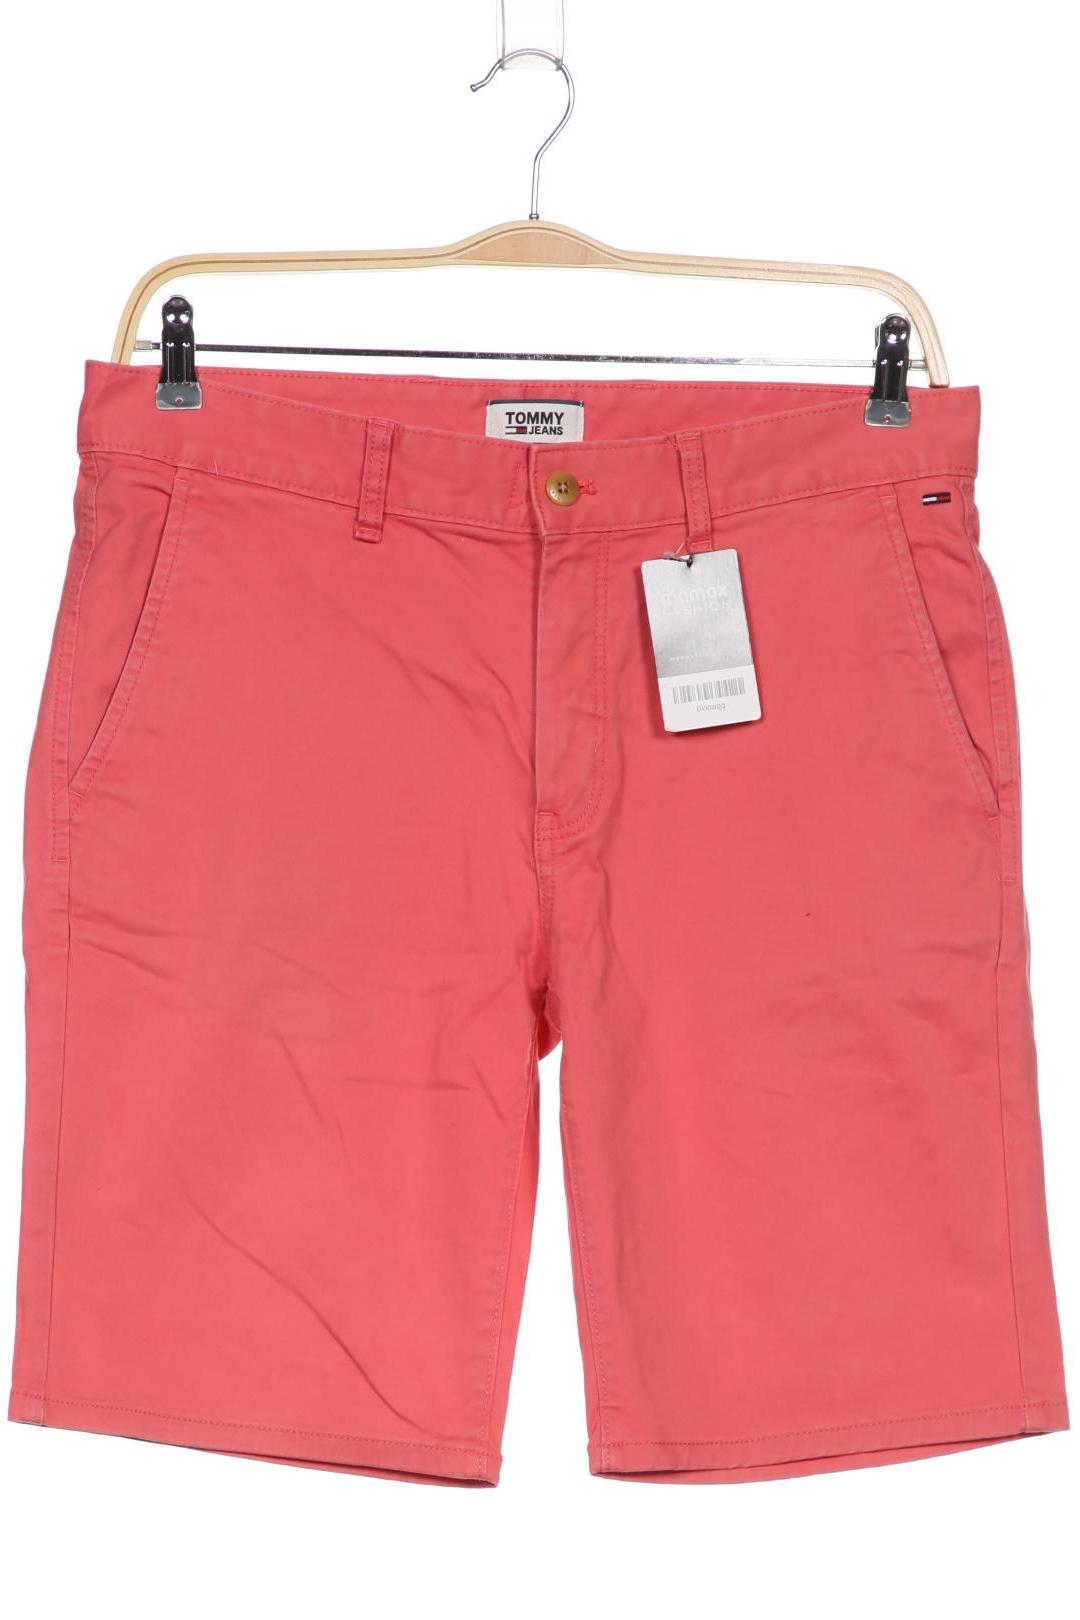 Tommy Jeans Herren Shorts, pink von Tommy Jeans